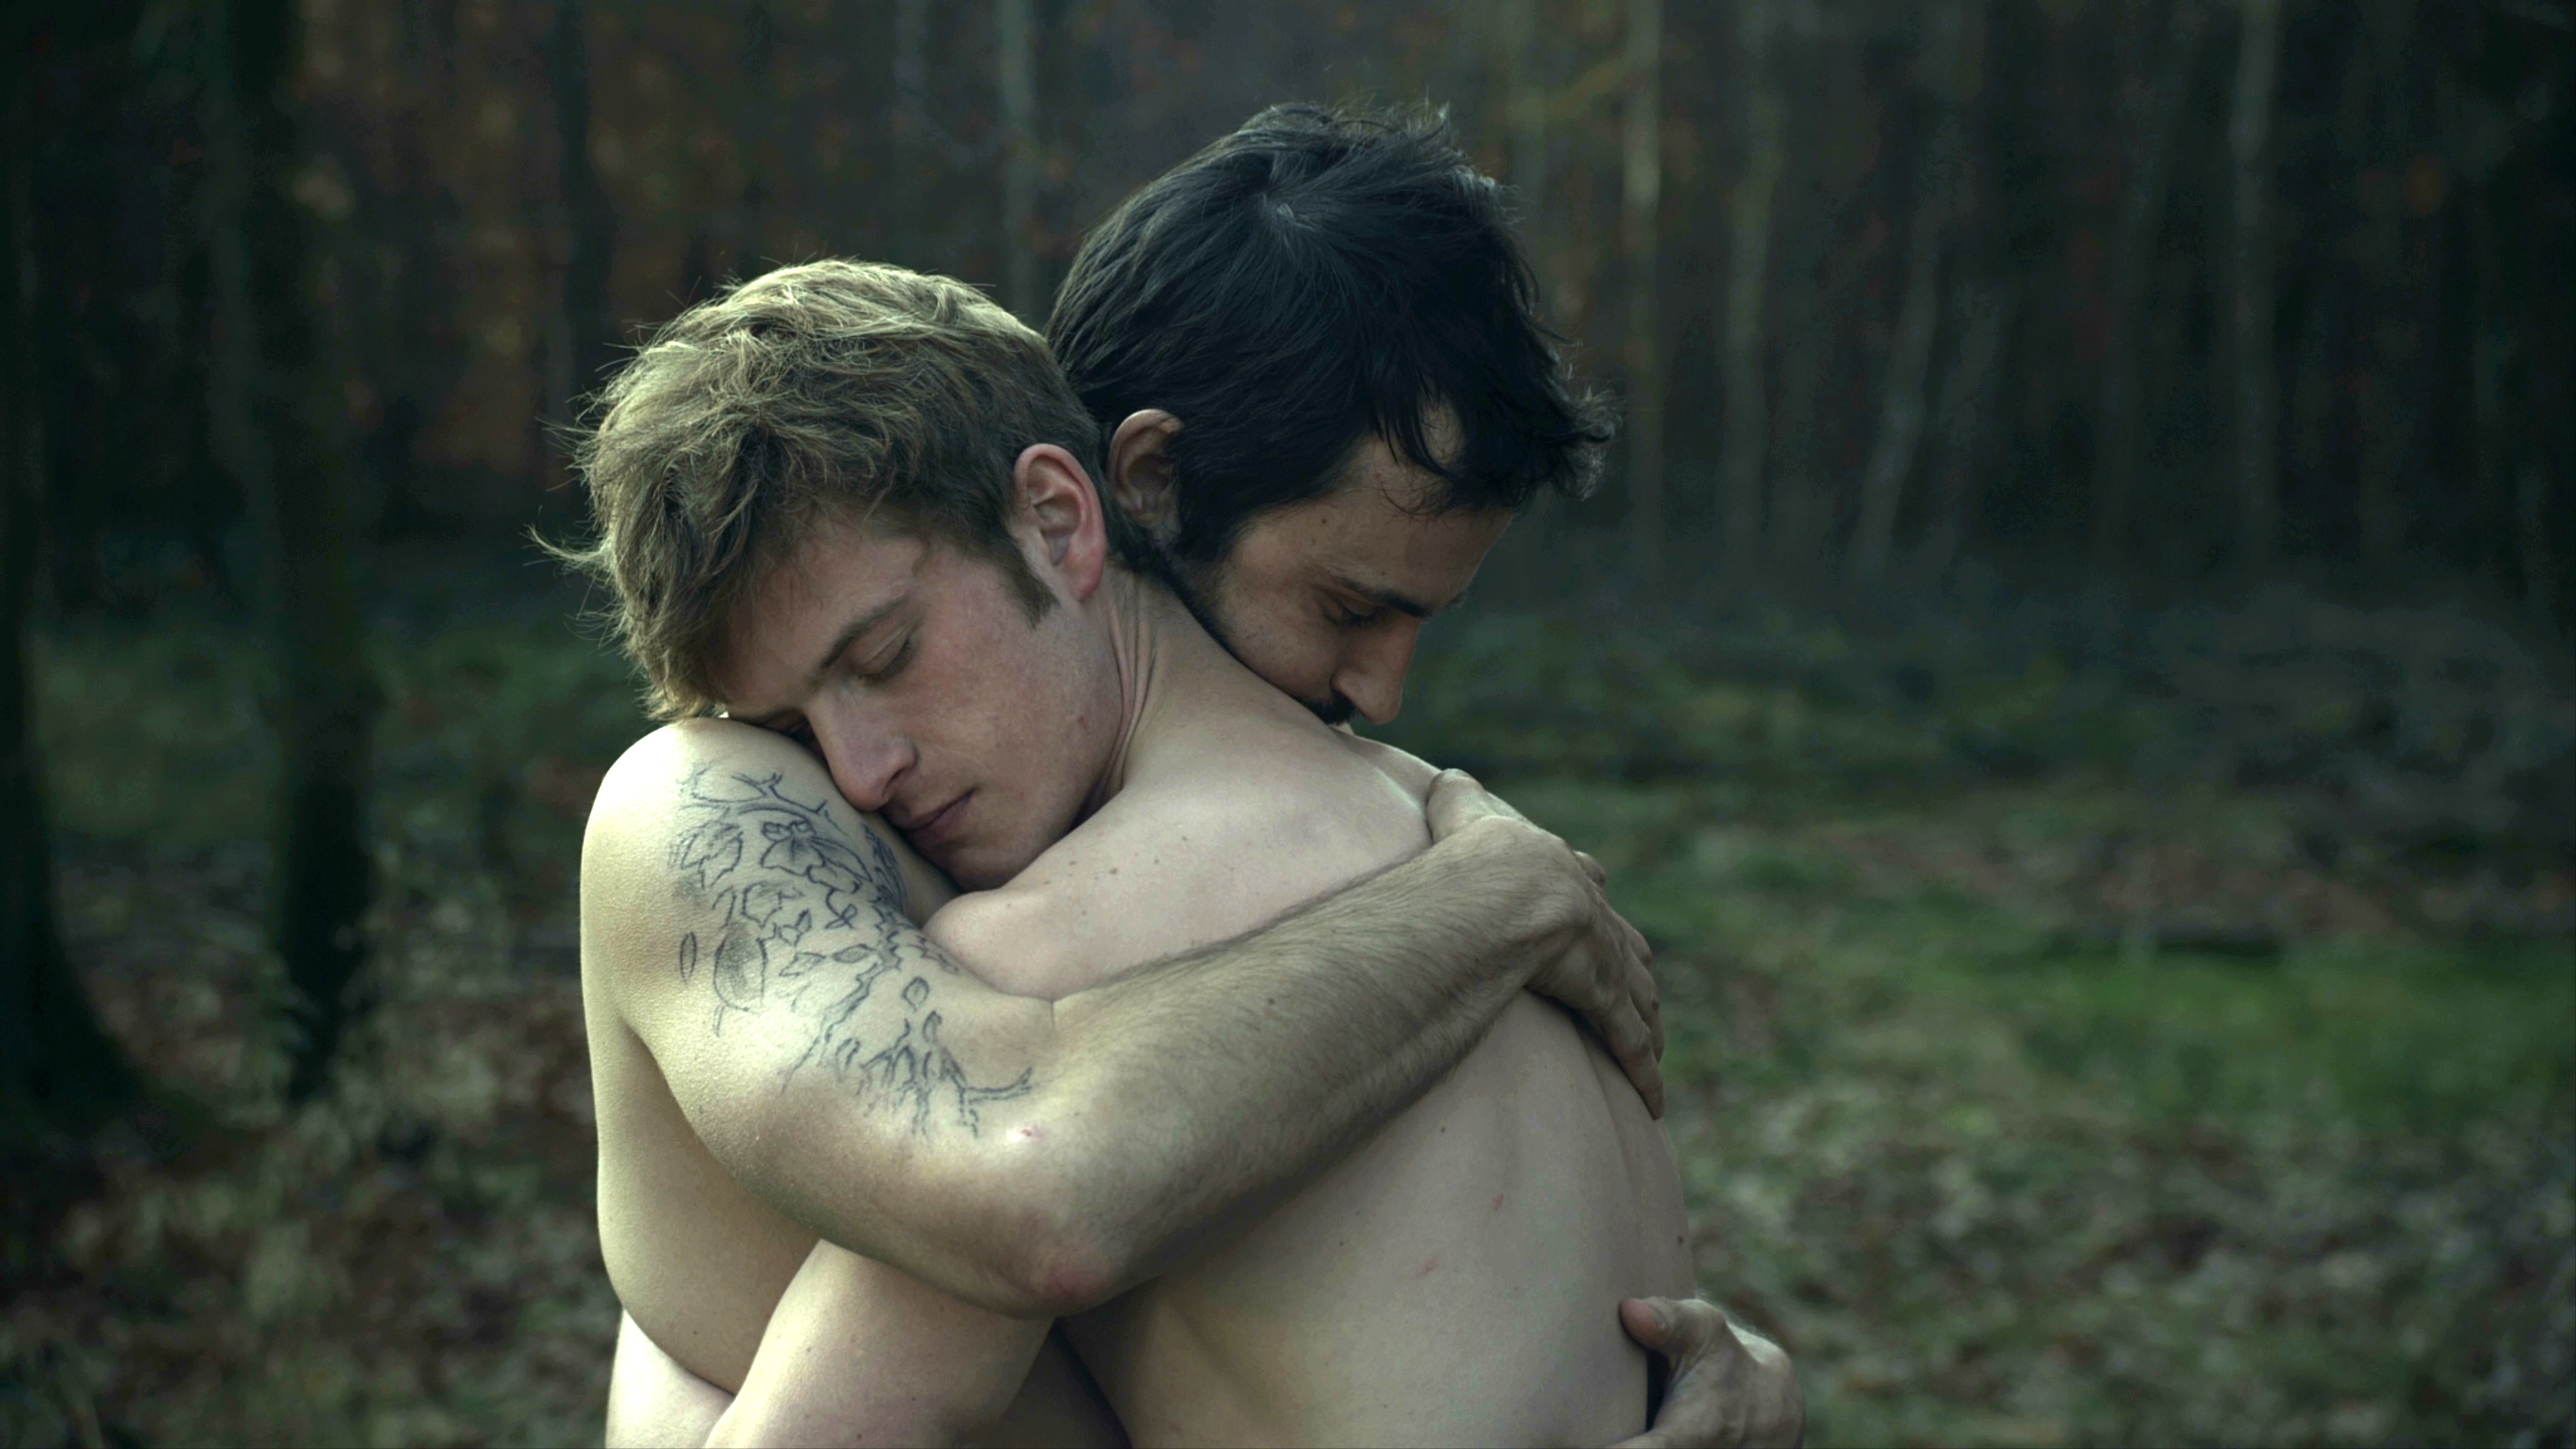 художественные фильмы для геев и про геев онлайн фото 20